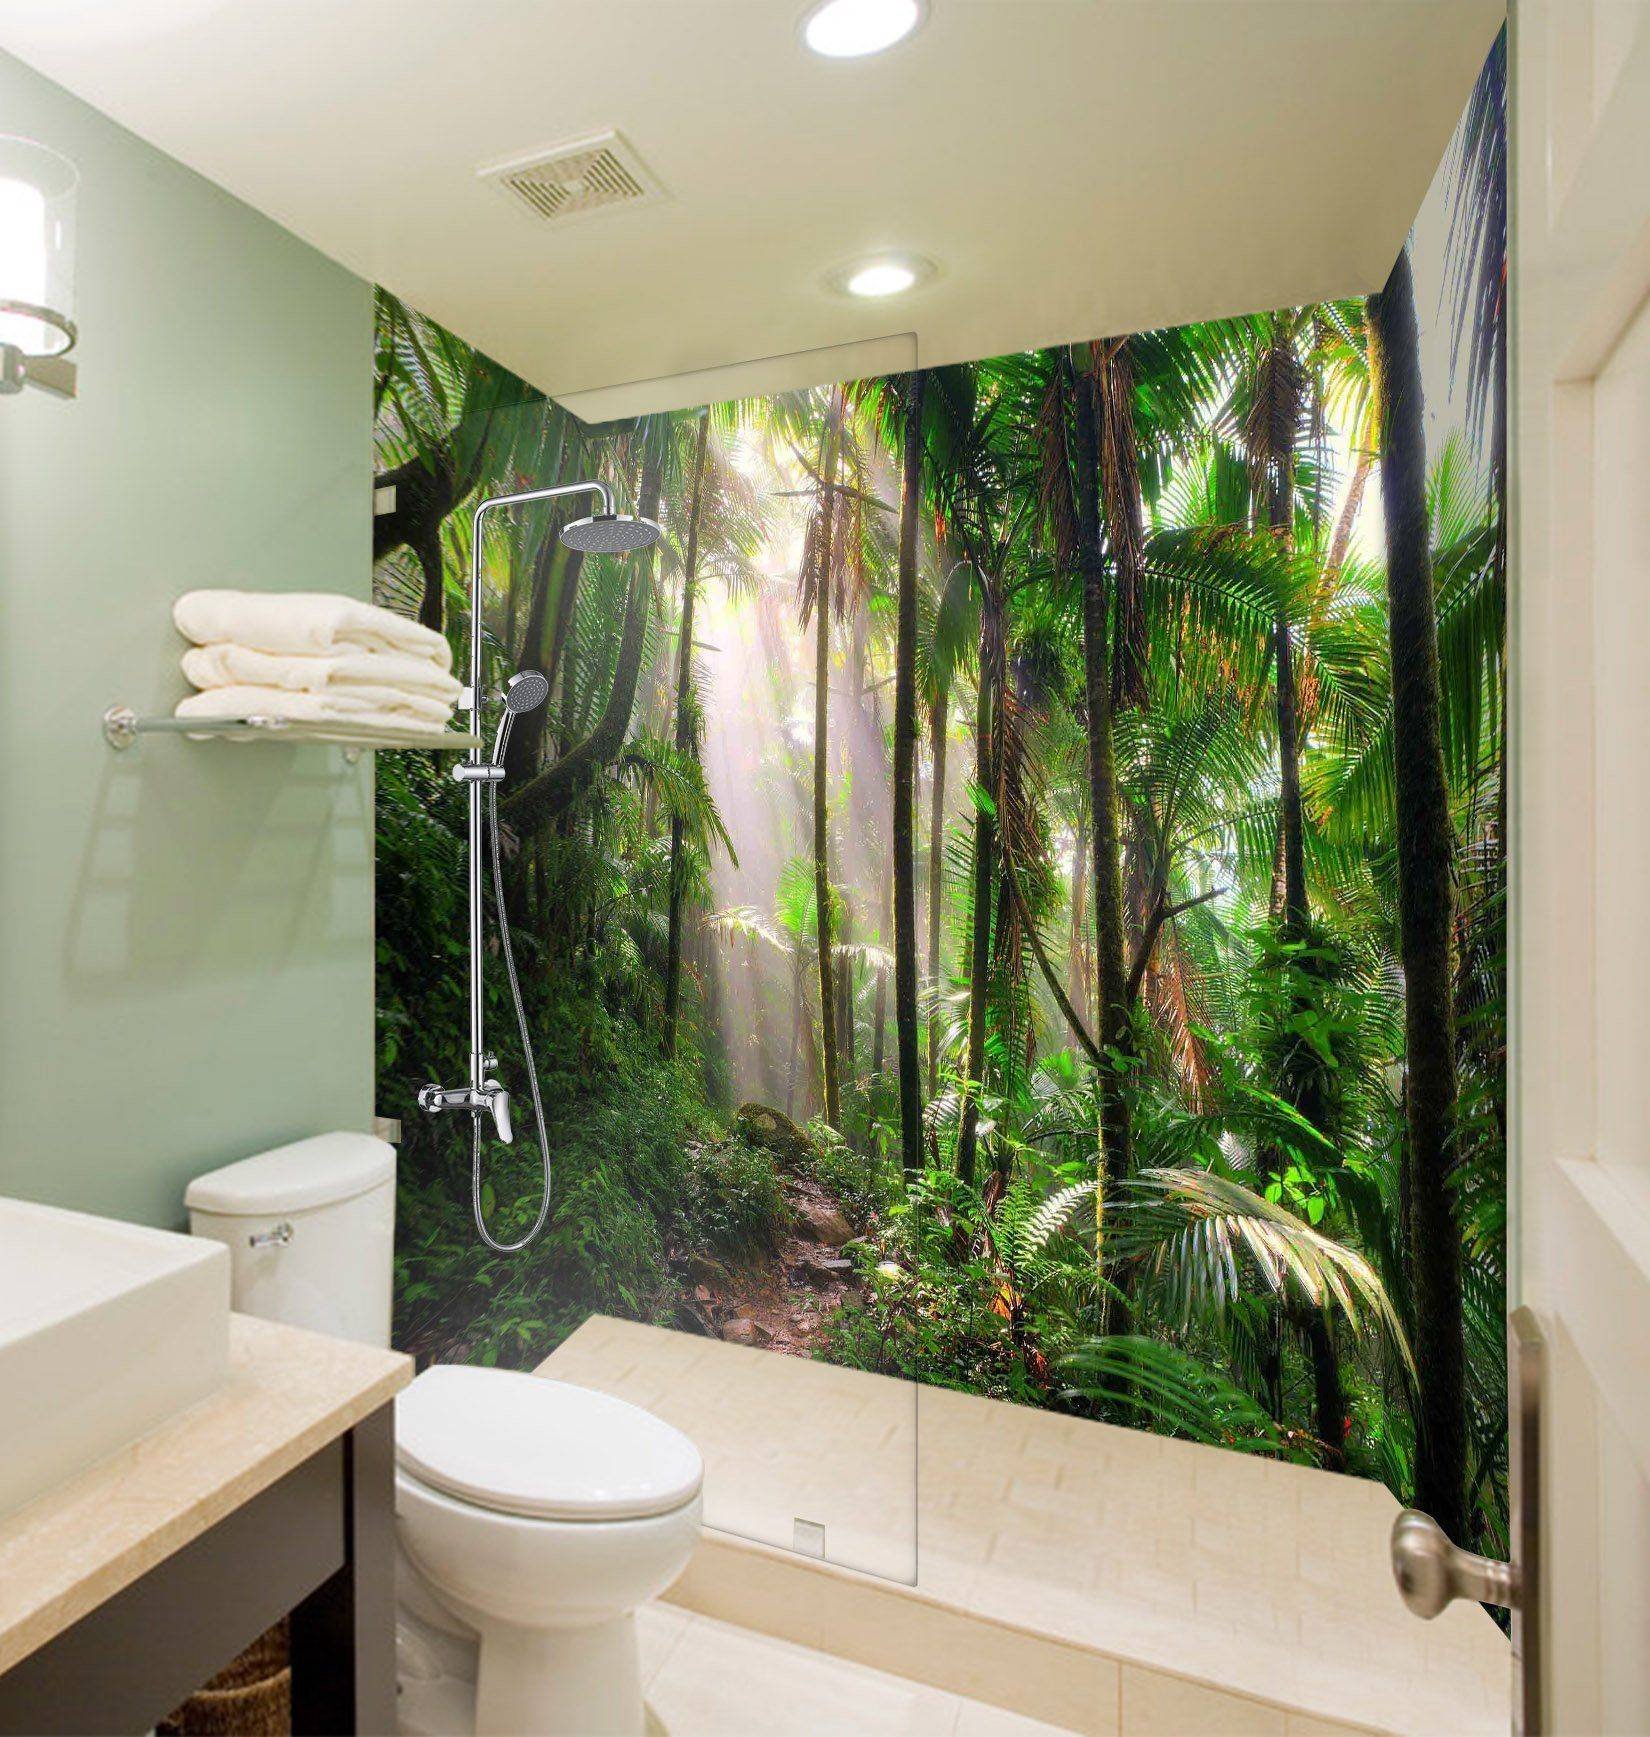 Ванна фотообои. Фотоплитка джунгли. Панно для ванной комнаты. Фреска в ванной комнате. Фотопанно в ванную комнату.